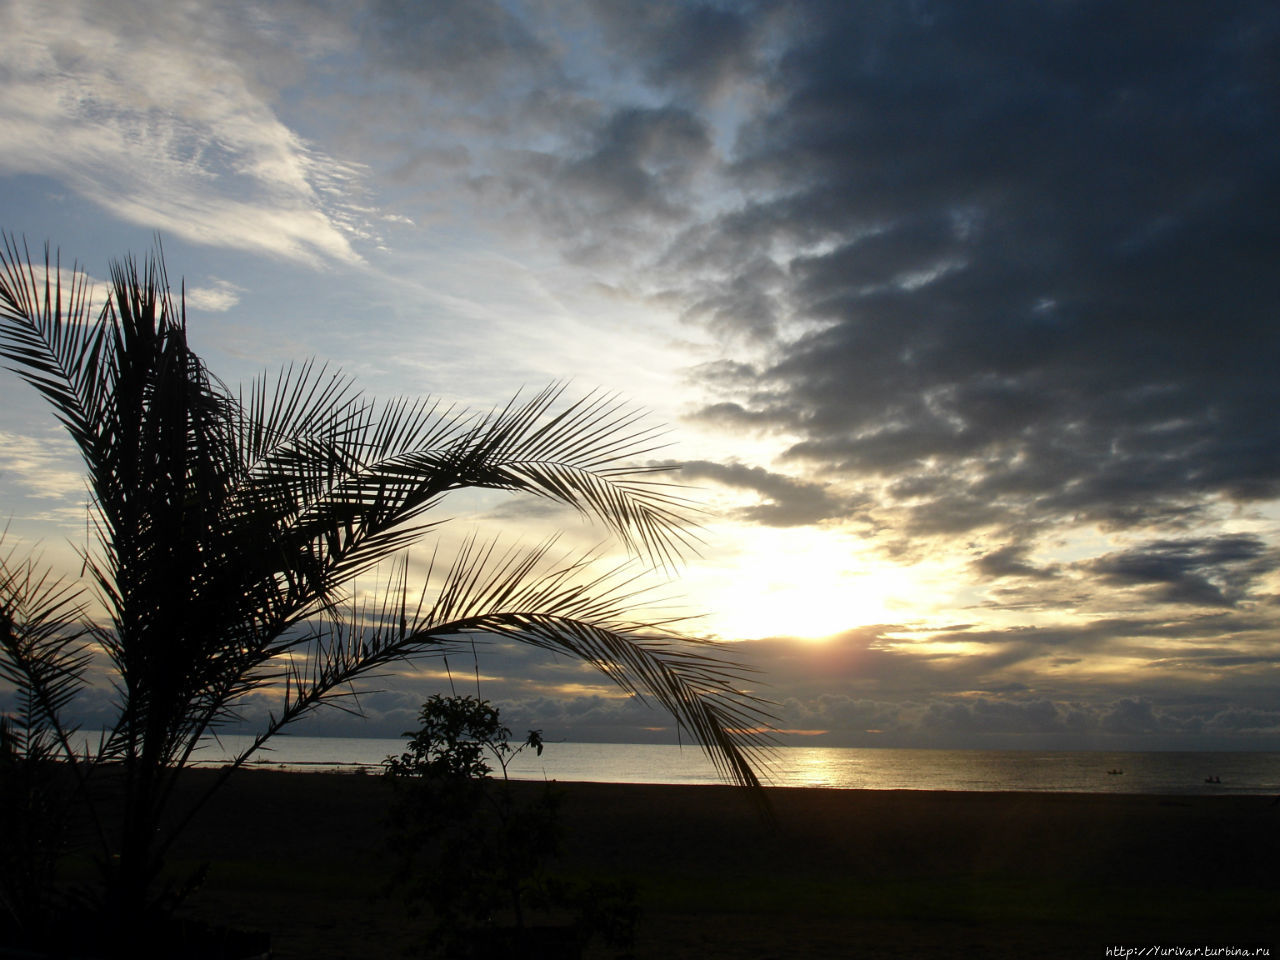 Закат на озере Ньяса (Малави) Виктория-Фоллс, Зимбабве